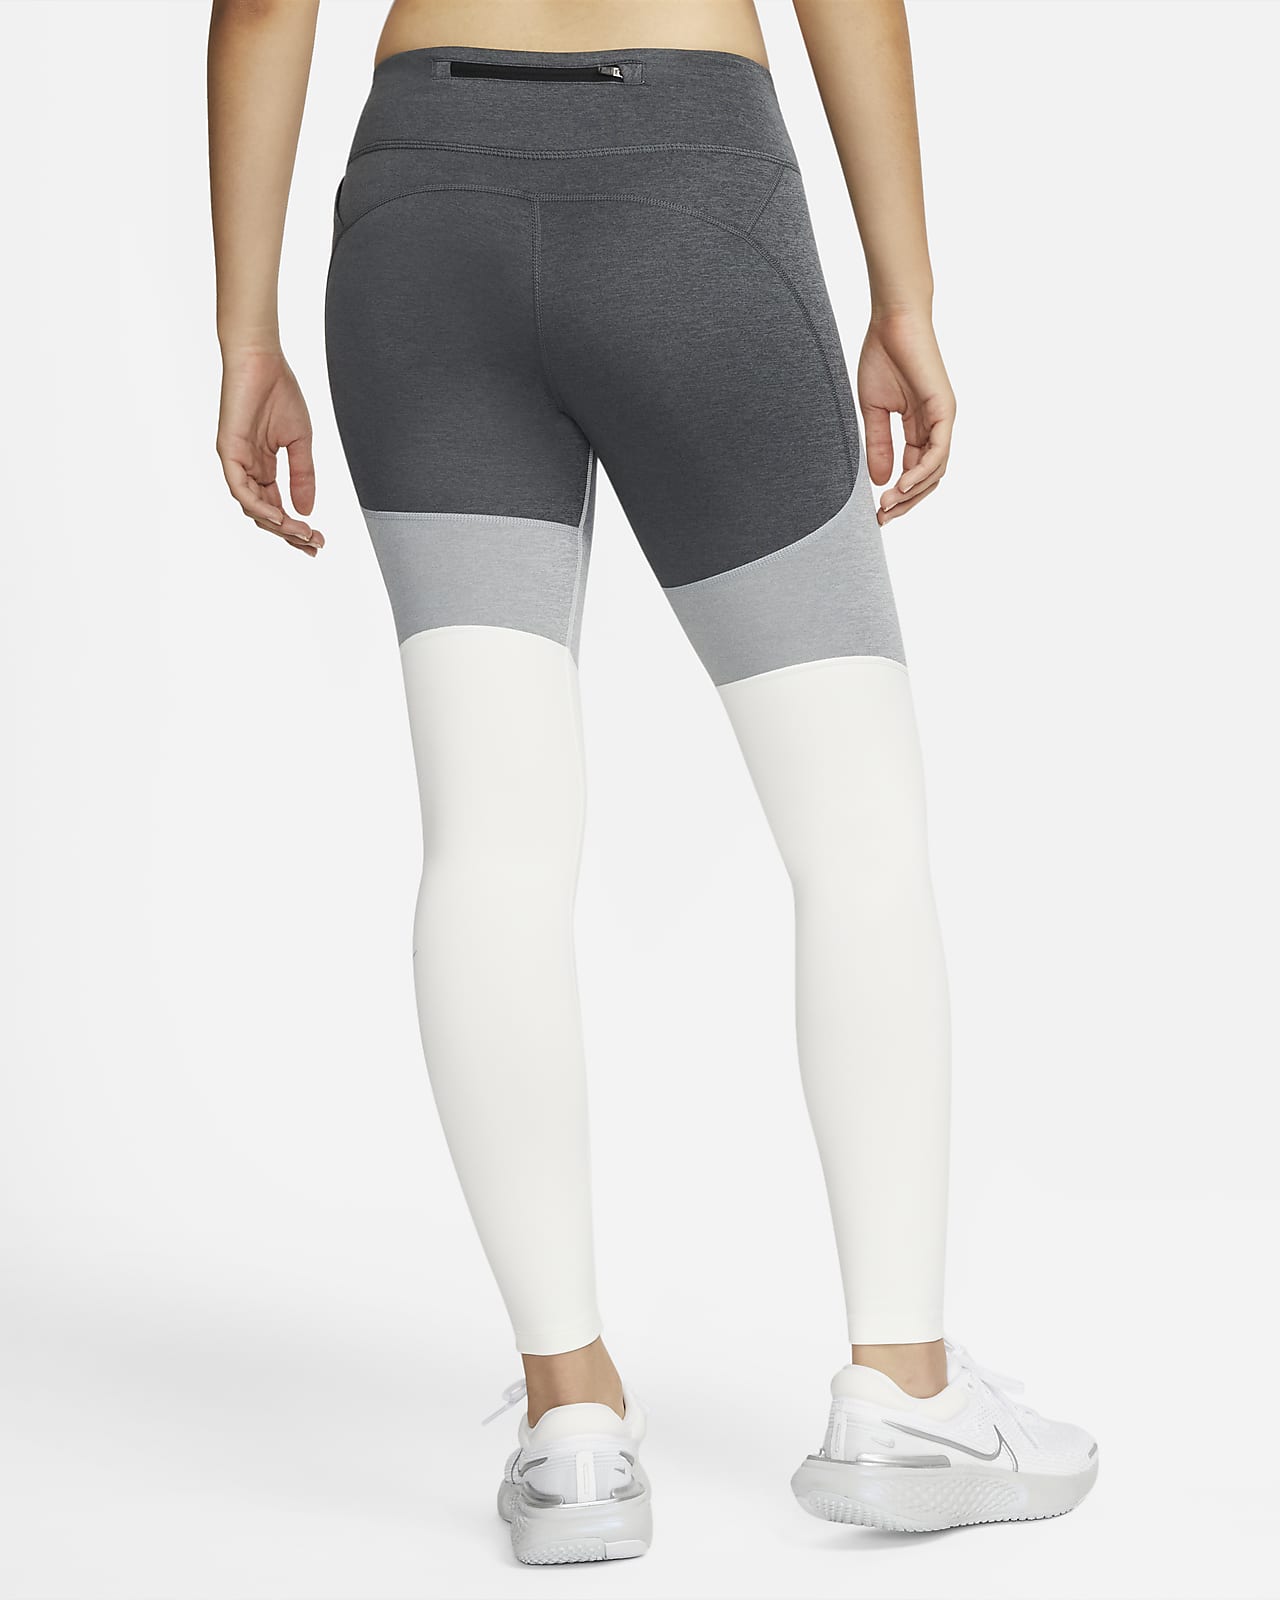 Two-tone 7/8 pocket legging, Nike, Running Bottoms